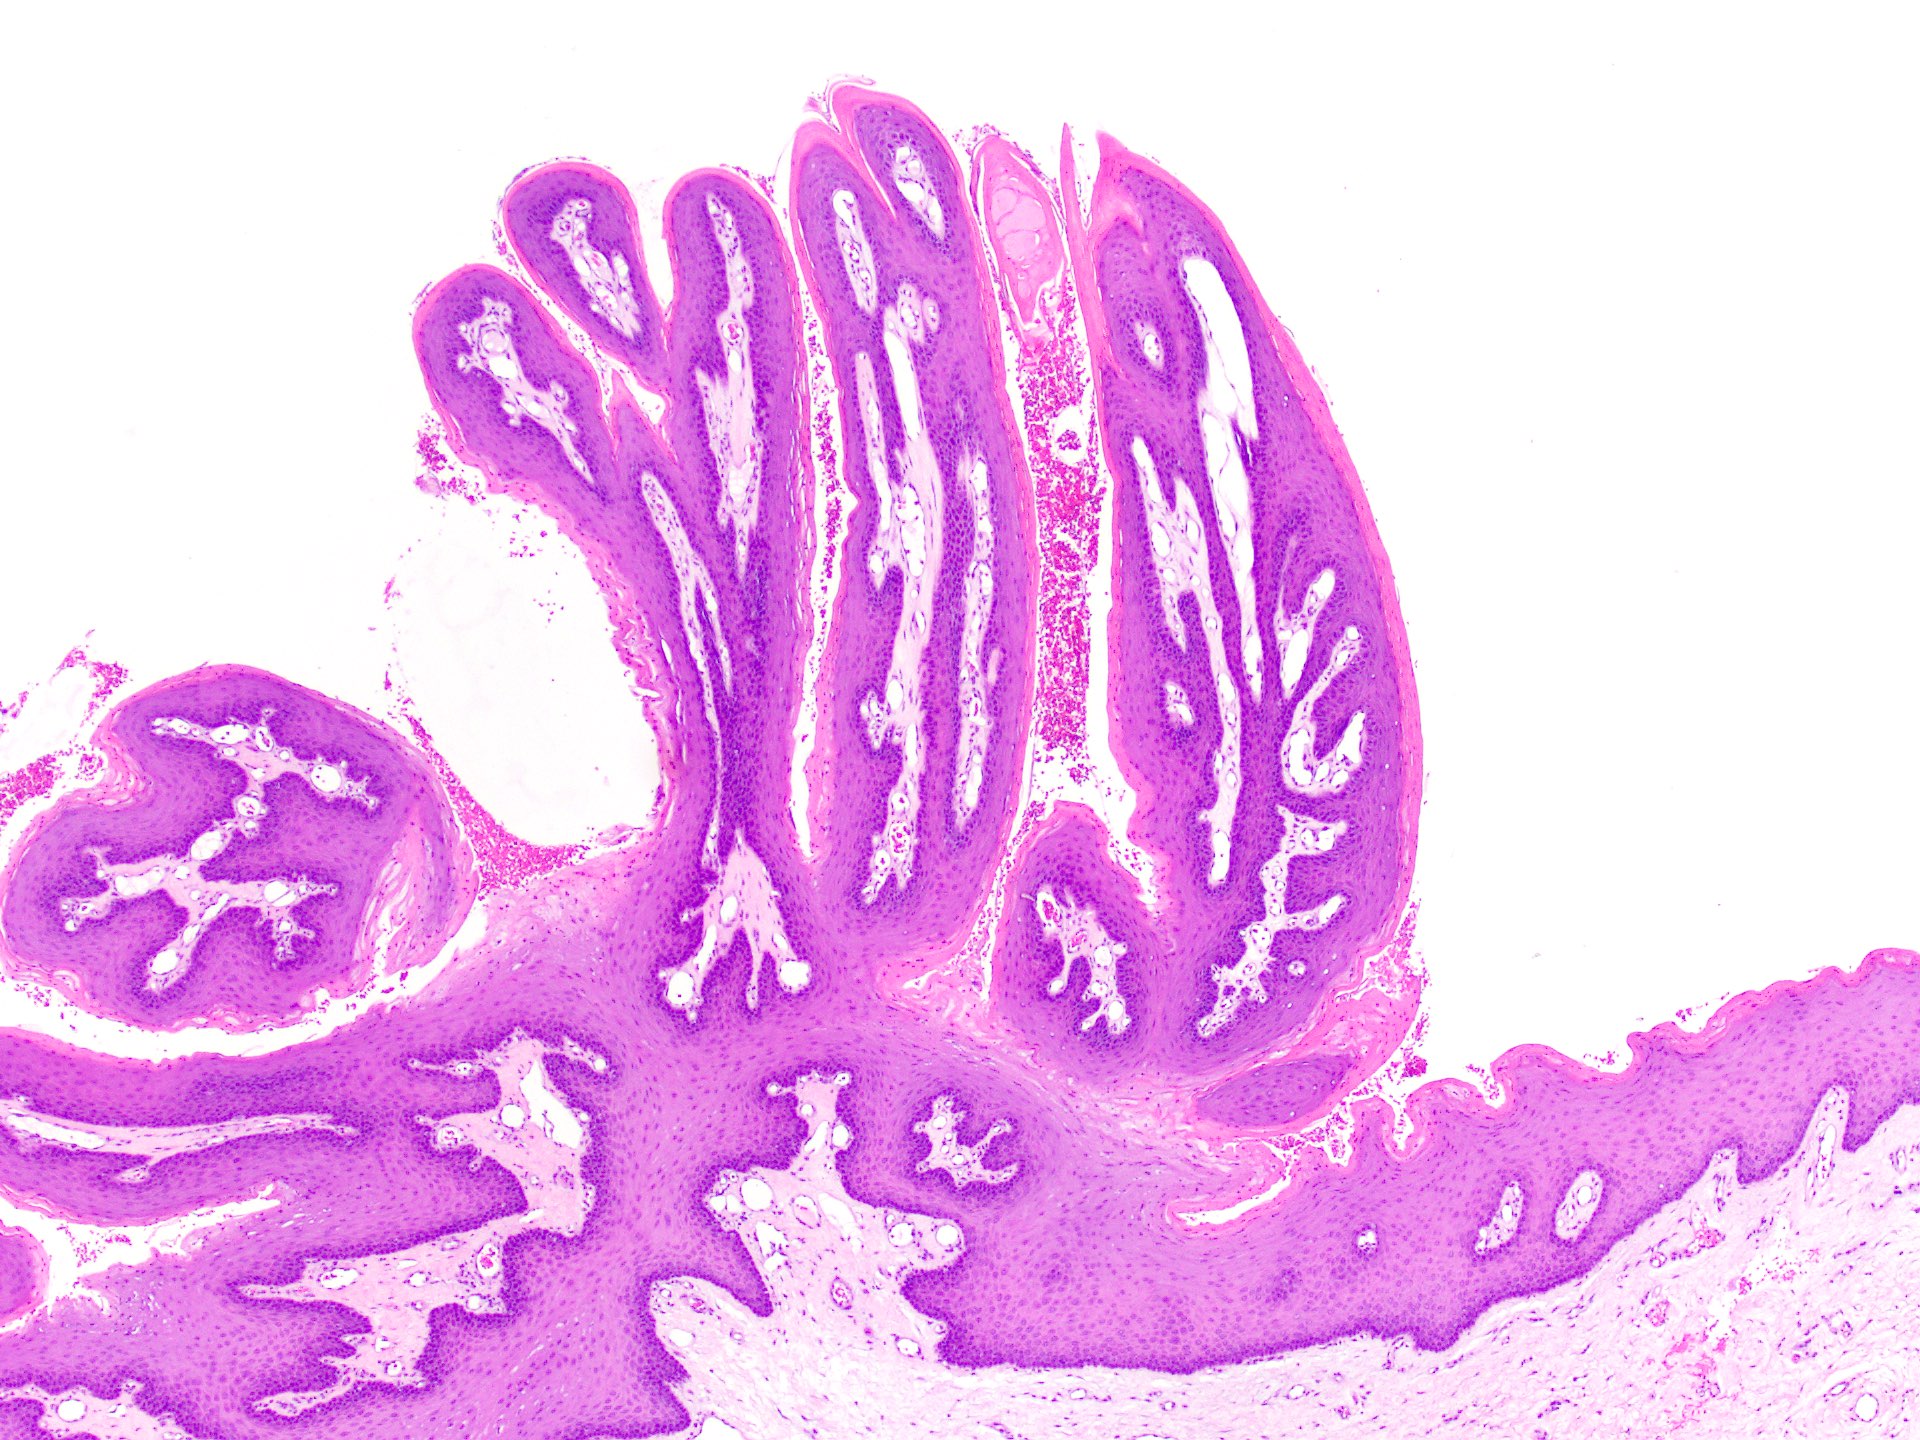 papilloma pathology outlines skin